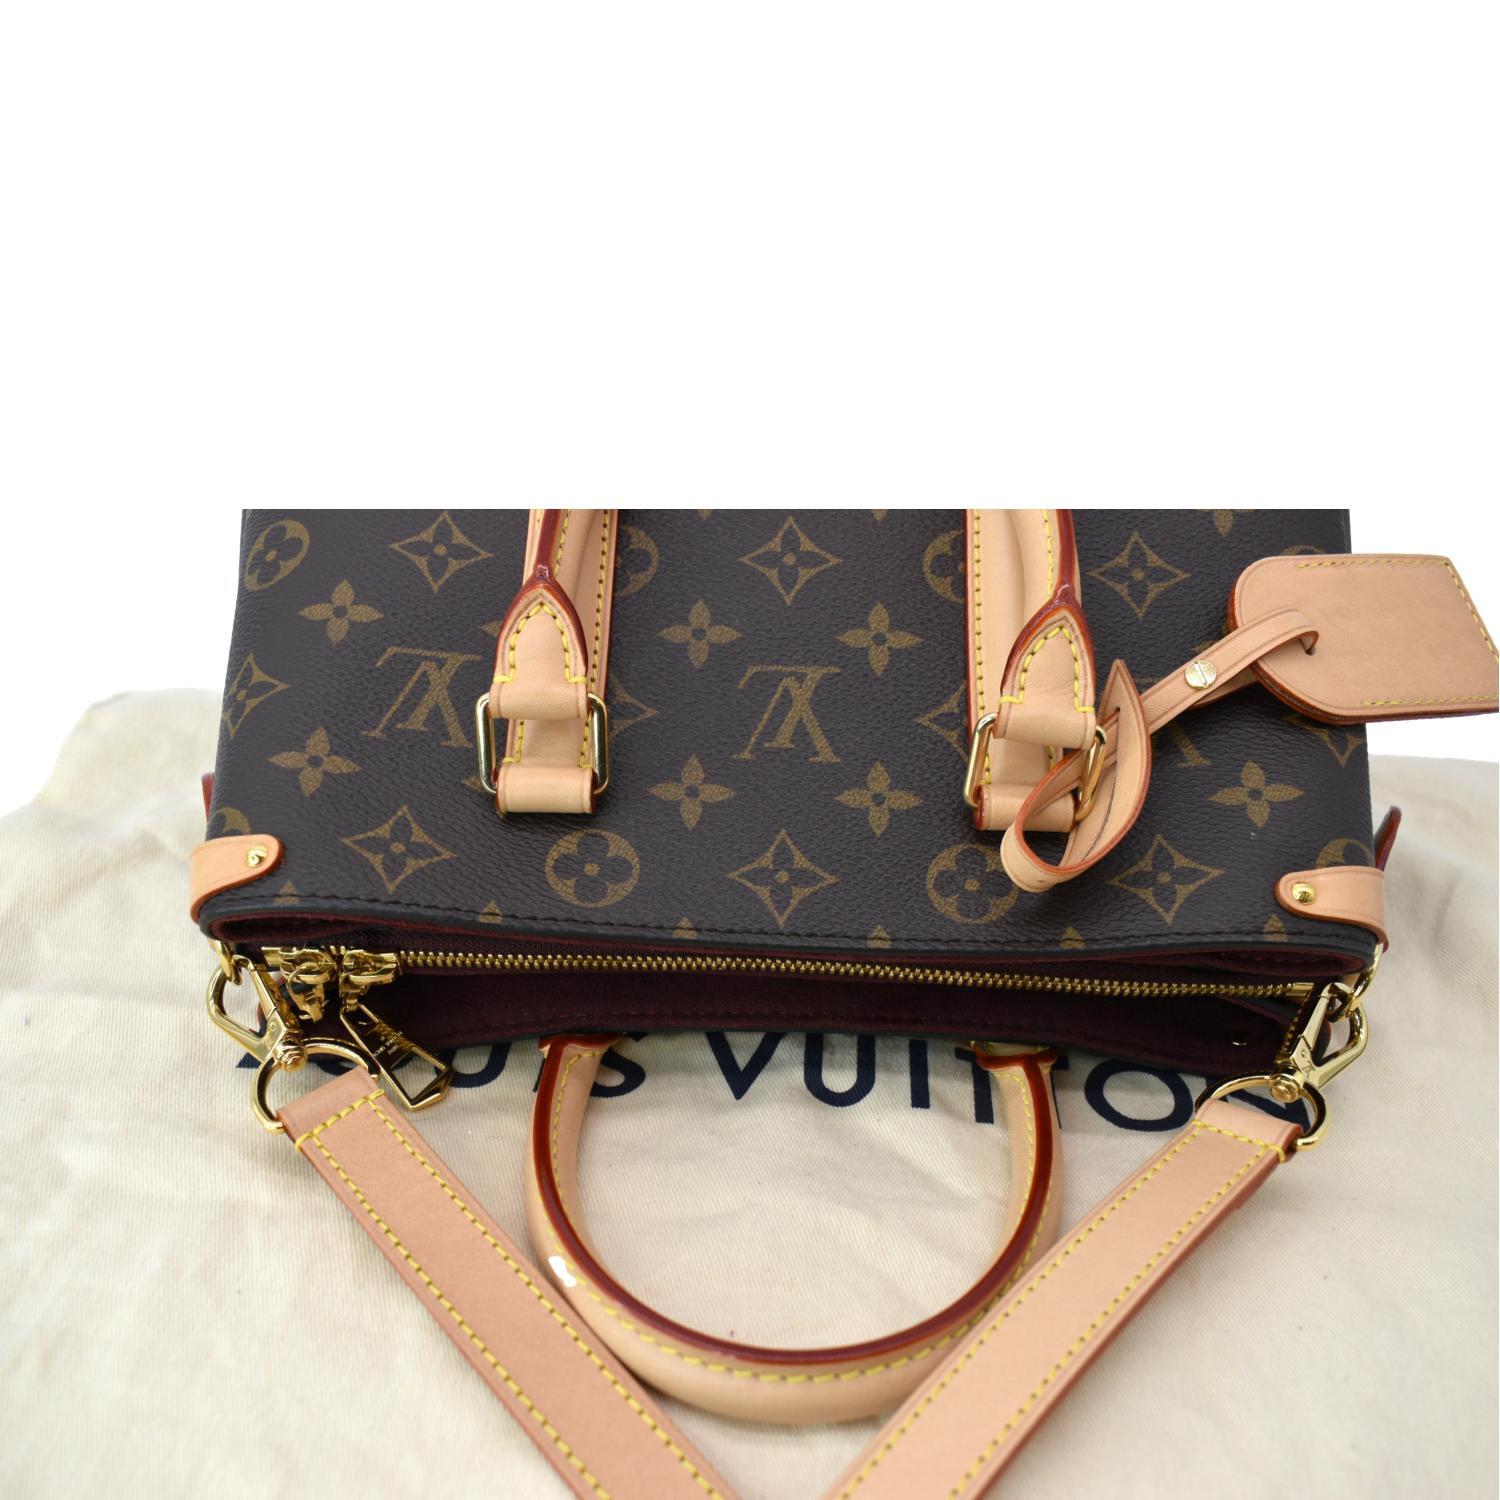 Found by Fred Segal - Women's Louis Vuitton Néonoé Bb Bag | Color: Brown | Size: 8 x 8